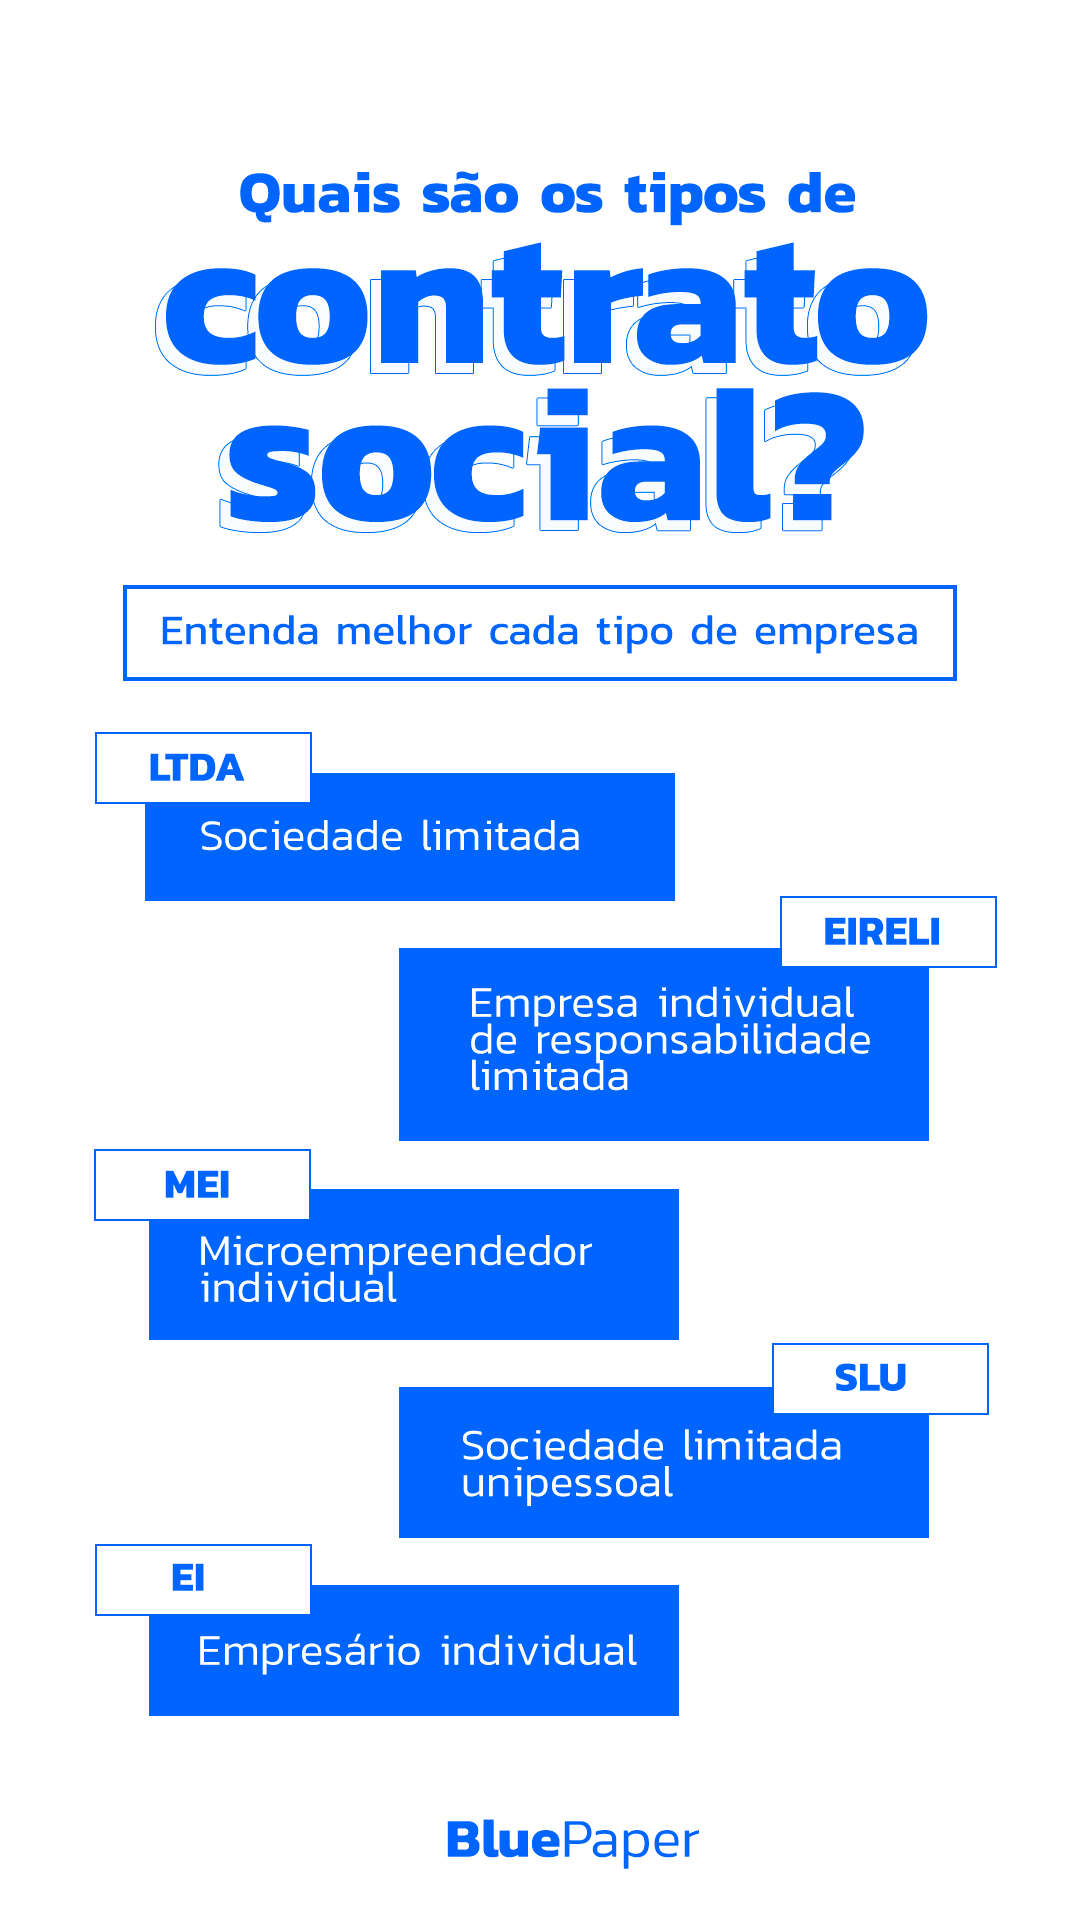 Quais são os tipos de contrato social? | by BluePaper | Medium